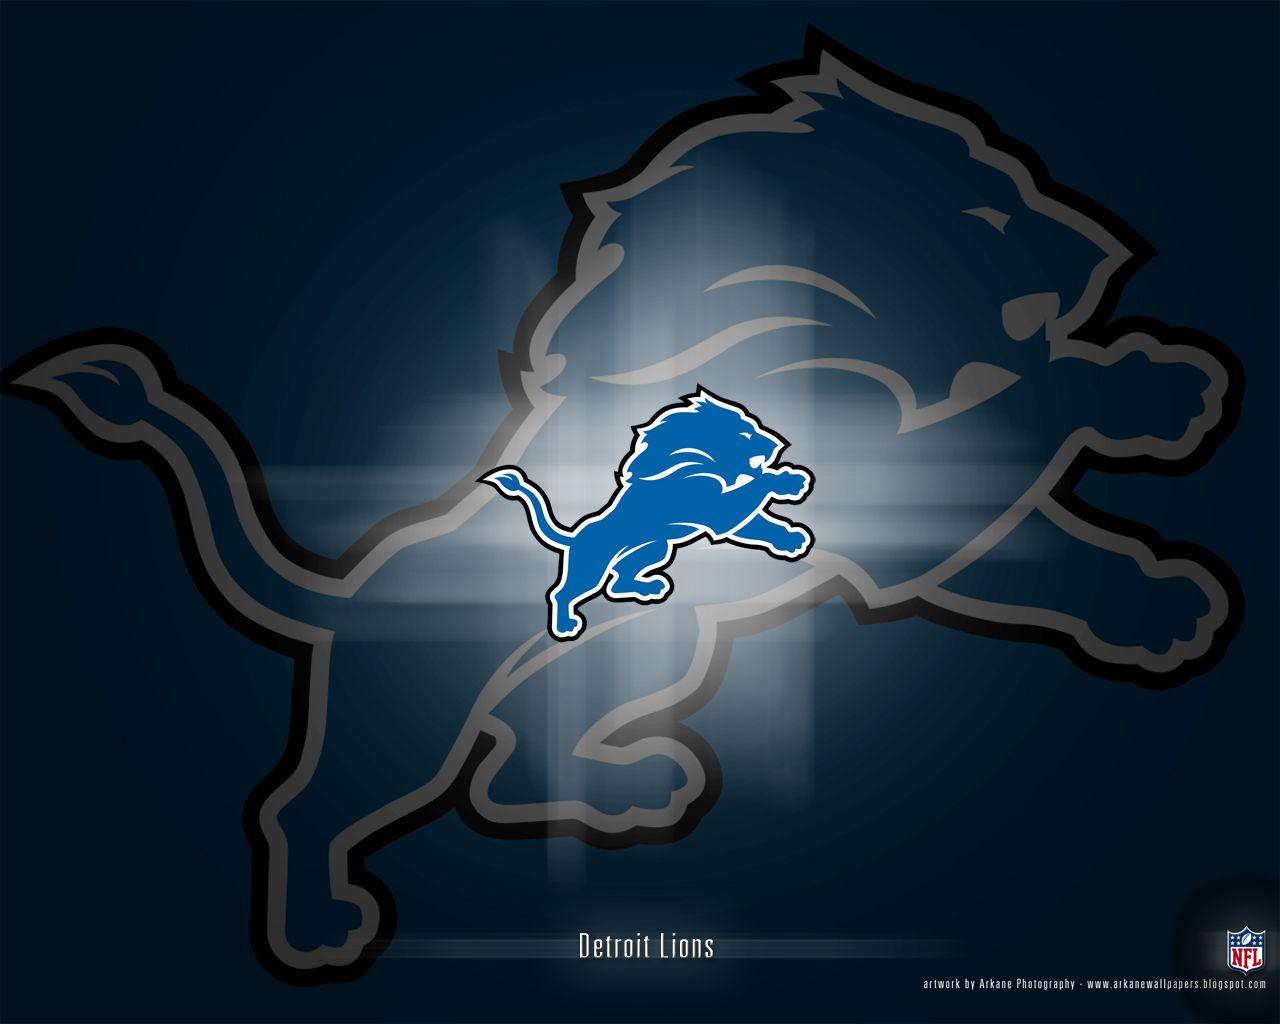 Detroit Lions Logo. My Detroit Lions. Lion logo